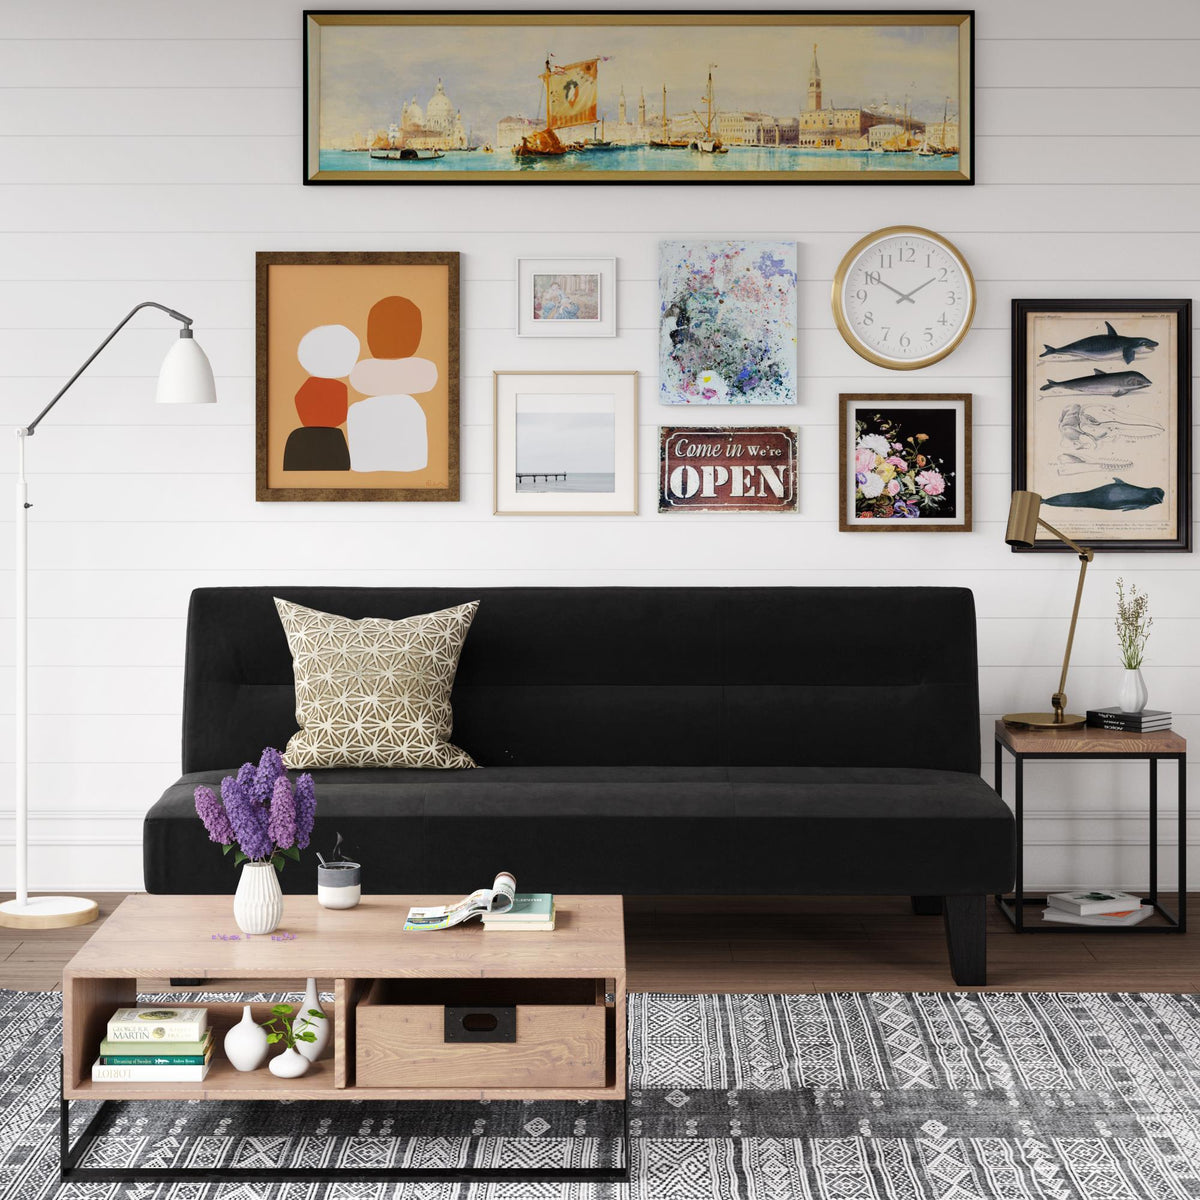 Kebo Futon Sofa Bed Dhp Furniture